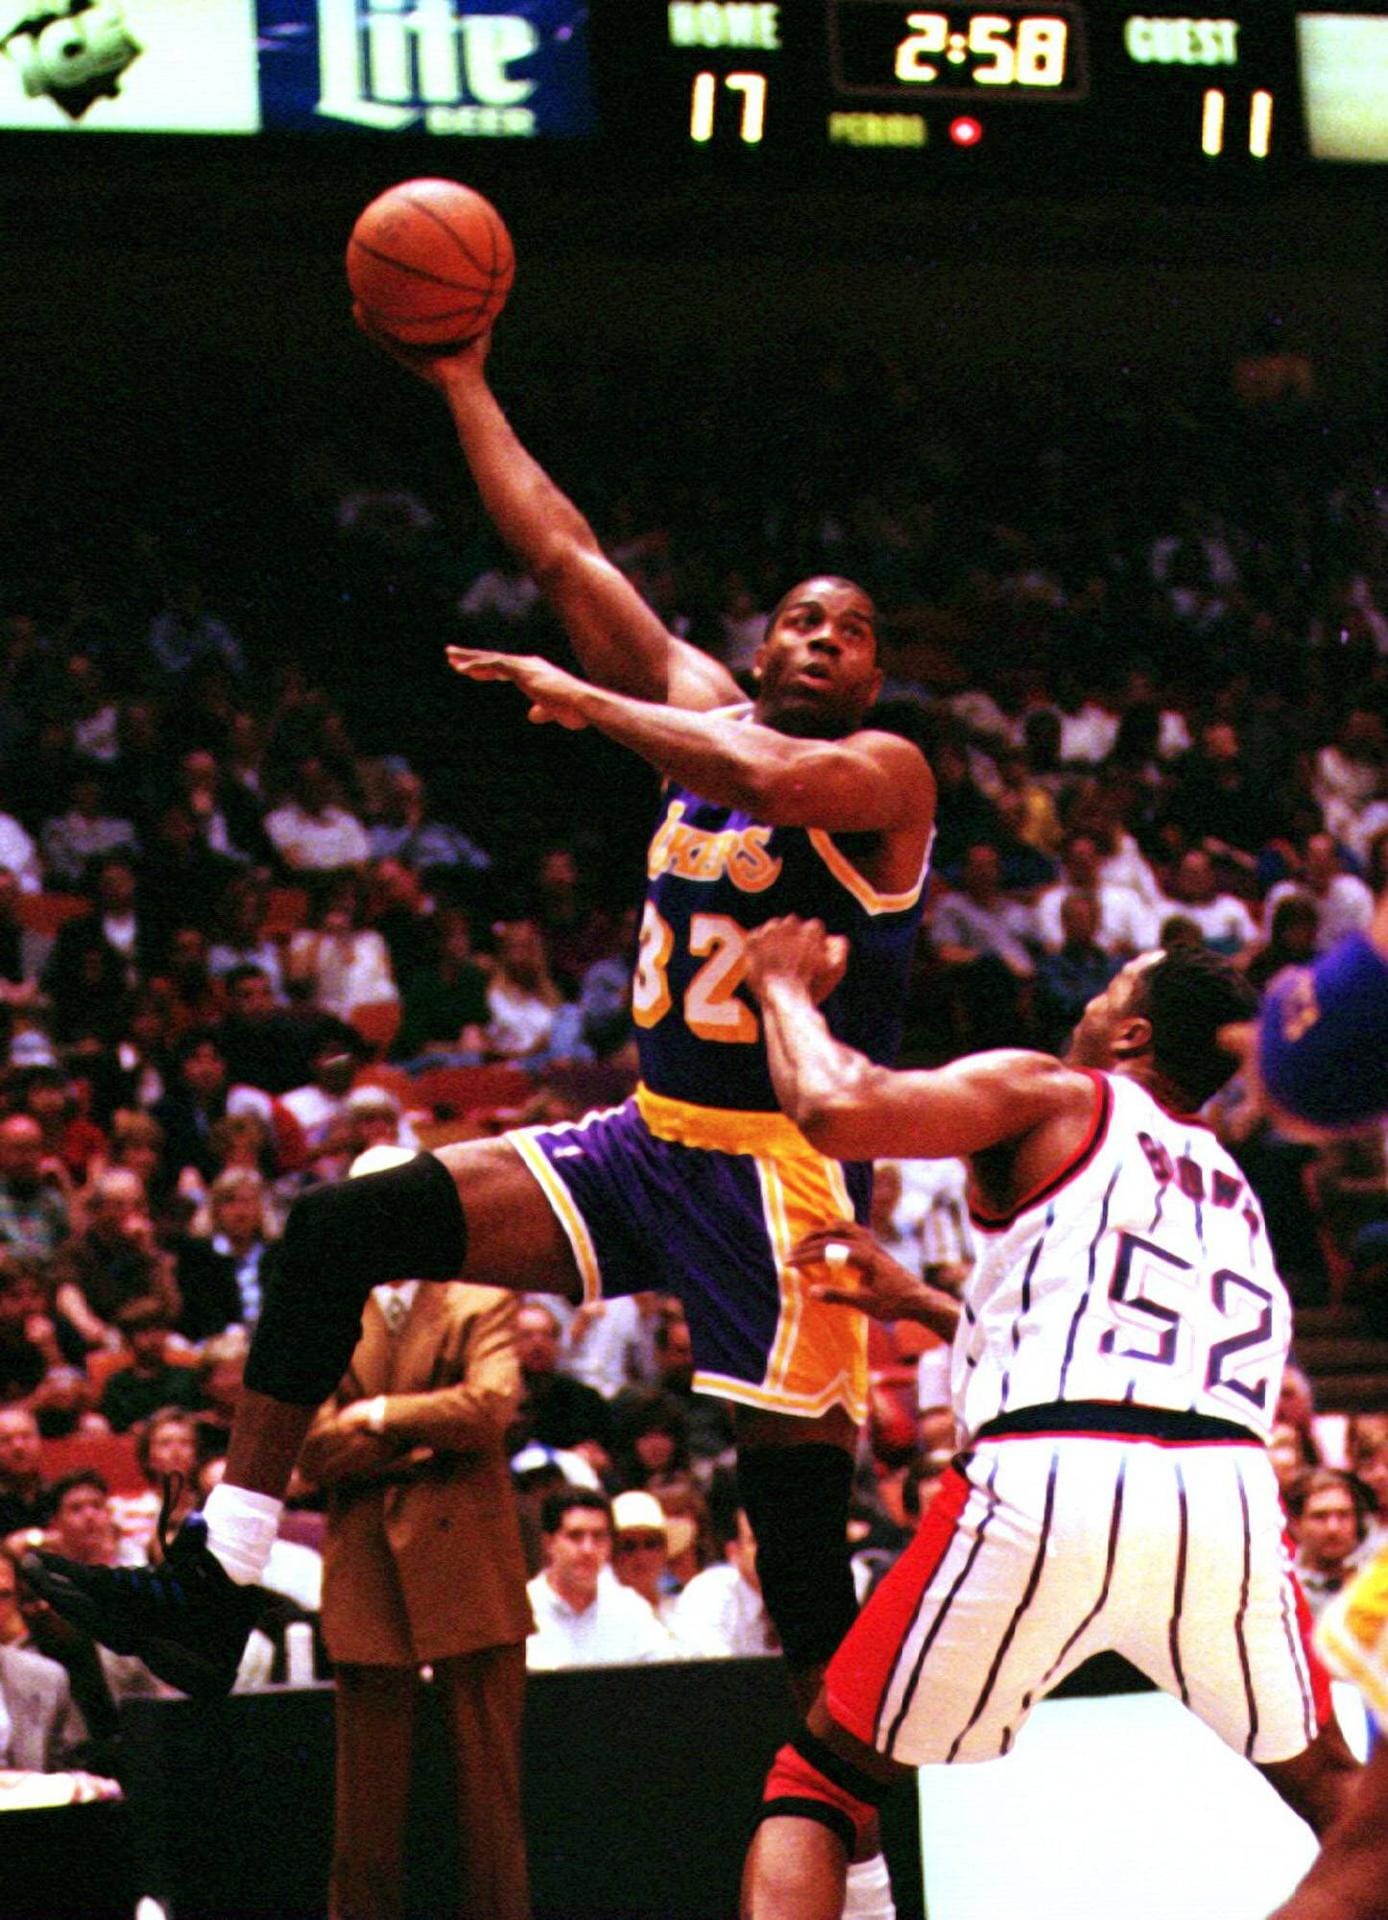 Earvin "Magic" Johnson (1979 - 1991, 1996) dominierte mit dem "Showtime Express" der Lakers in den 1980ern die NBA. Johnson konnte alle Positionen spielen, war aber besonders als Assist-Geber magisch. Seine Rivalität mit dem Boston-Celtics-Spieler Larry Bird begeisterte. "Magic" musste seine Karriere frühzeitig beenden, weil er an HIV erkrankte. Seine wichtigsten Erfolge: fünfmal NBA-Champion, dreimal MVP, Gold mit dem Dreamteam bei den Olympischen Spielen 1992.